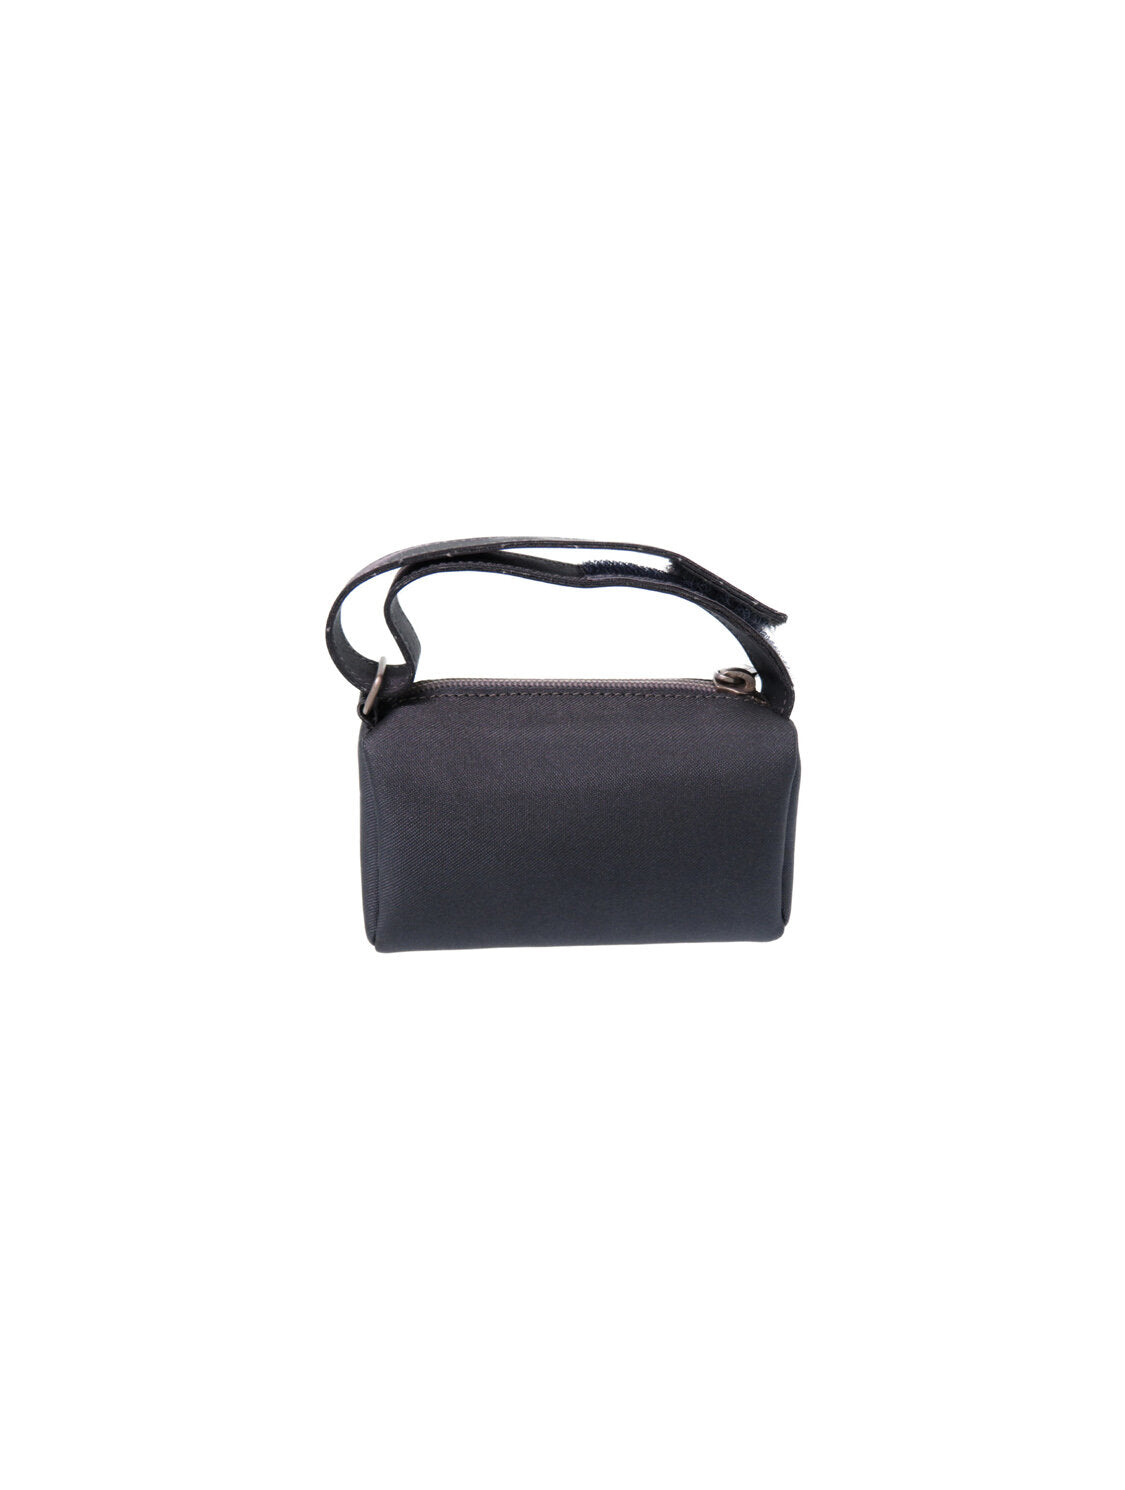 Chanel Sports Gray Nylon Mini Pouch Bag